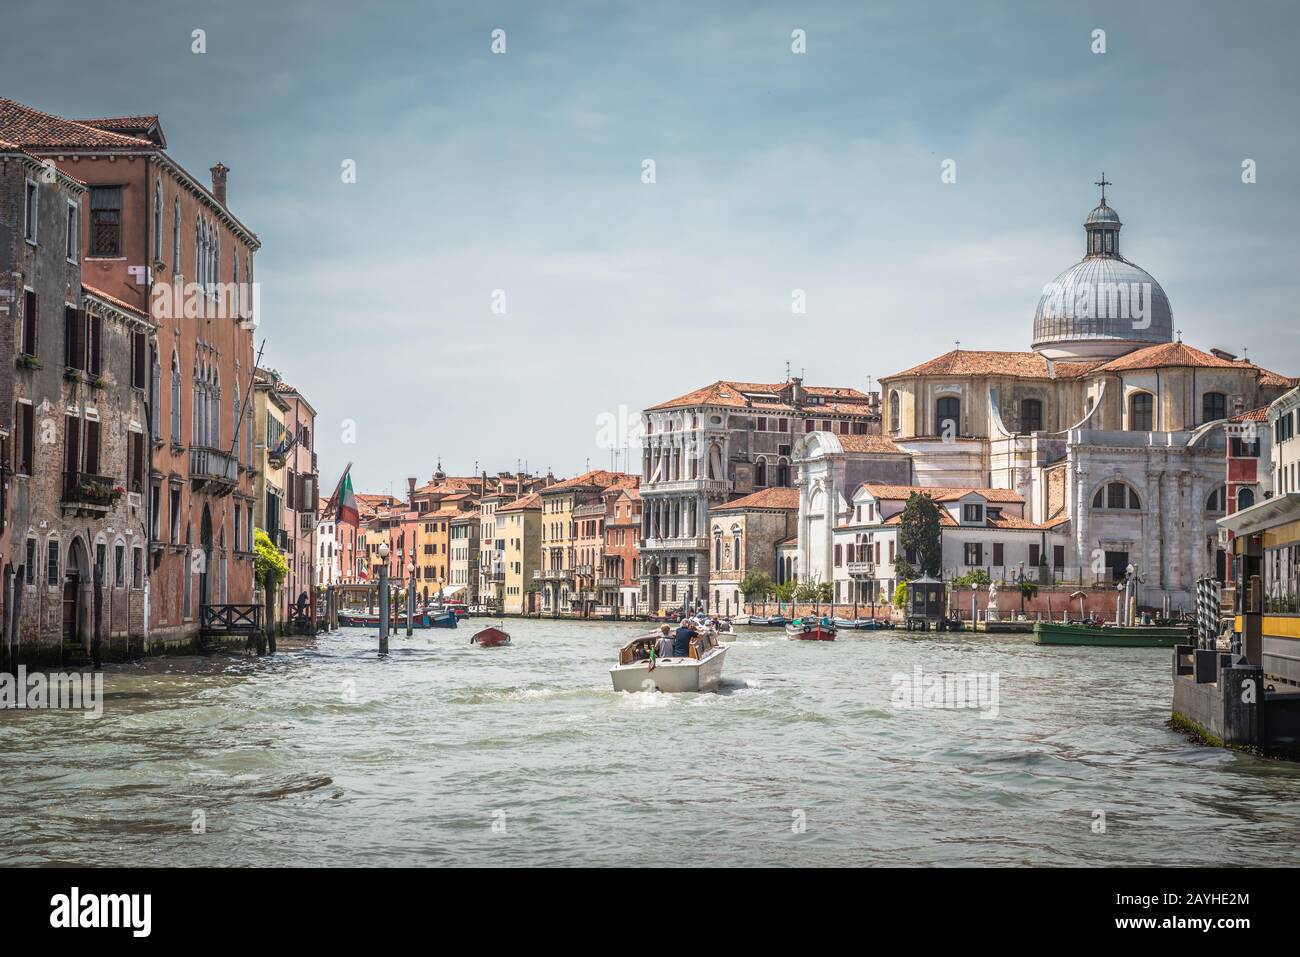 Panorama auf den berühmten Canal Grande, Venedig, Italien. Foto im Vintage-Stil der Stadt Venedig. Historische Architektur und Stadtbild Venedigs. Romantisch mit Stockfoto